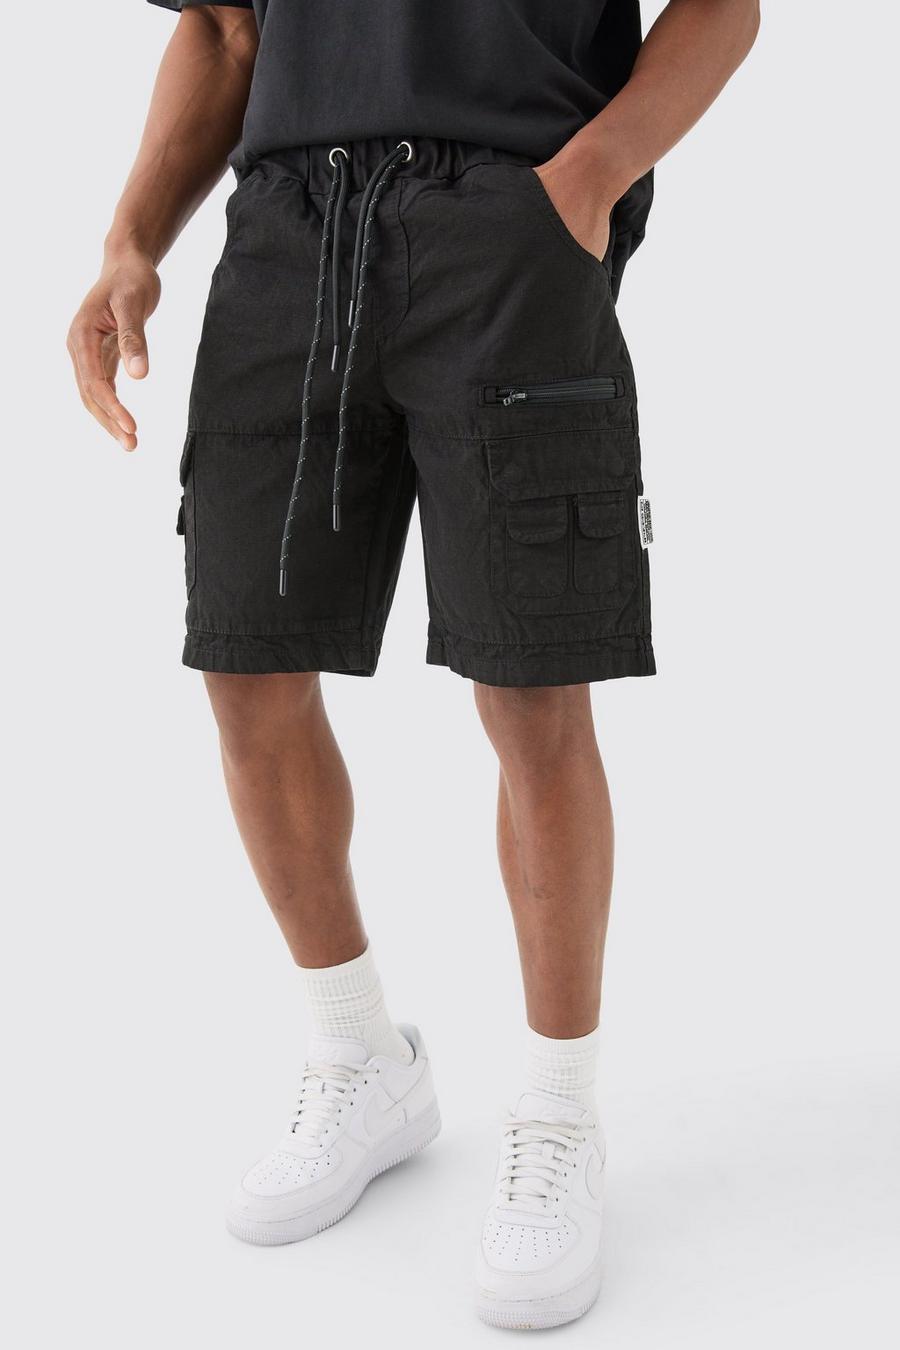 Pantaloncini Cargo in nylon ripstop elasticizzati in vita, Black